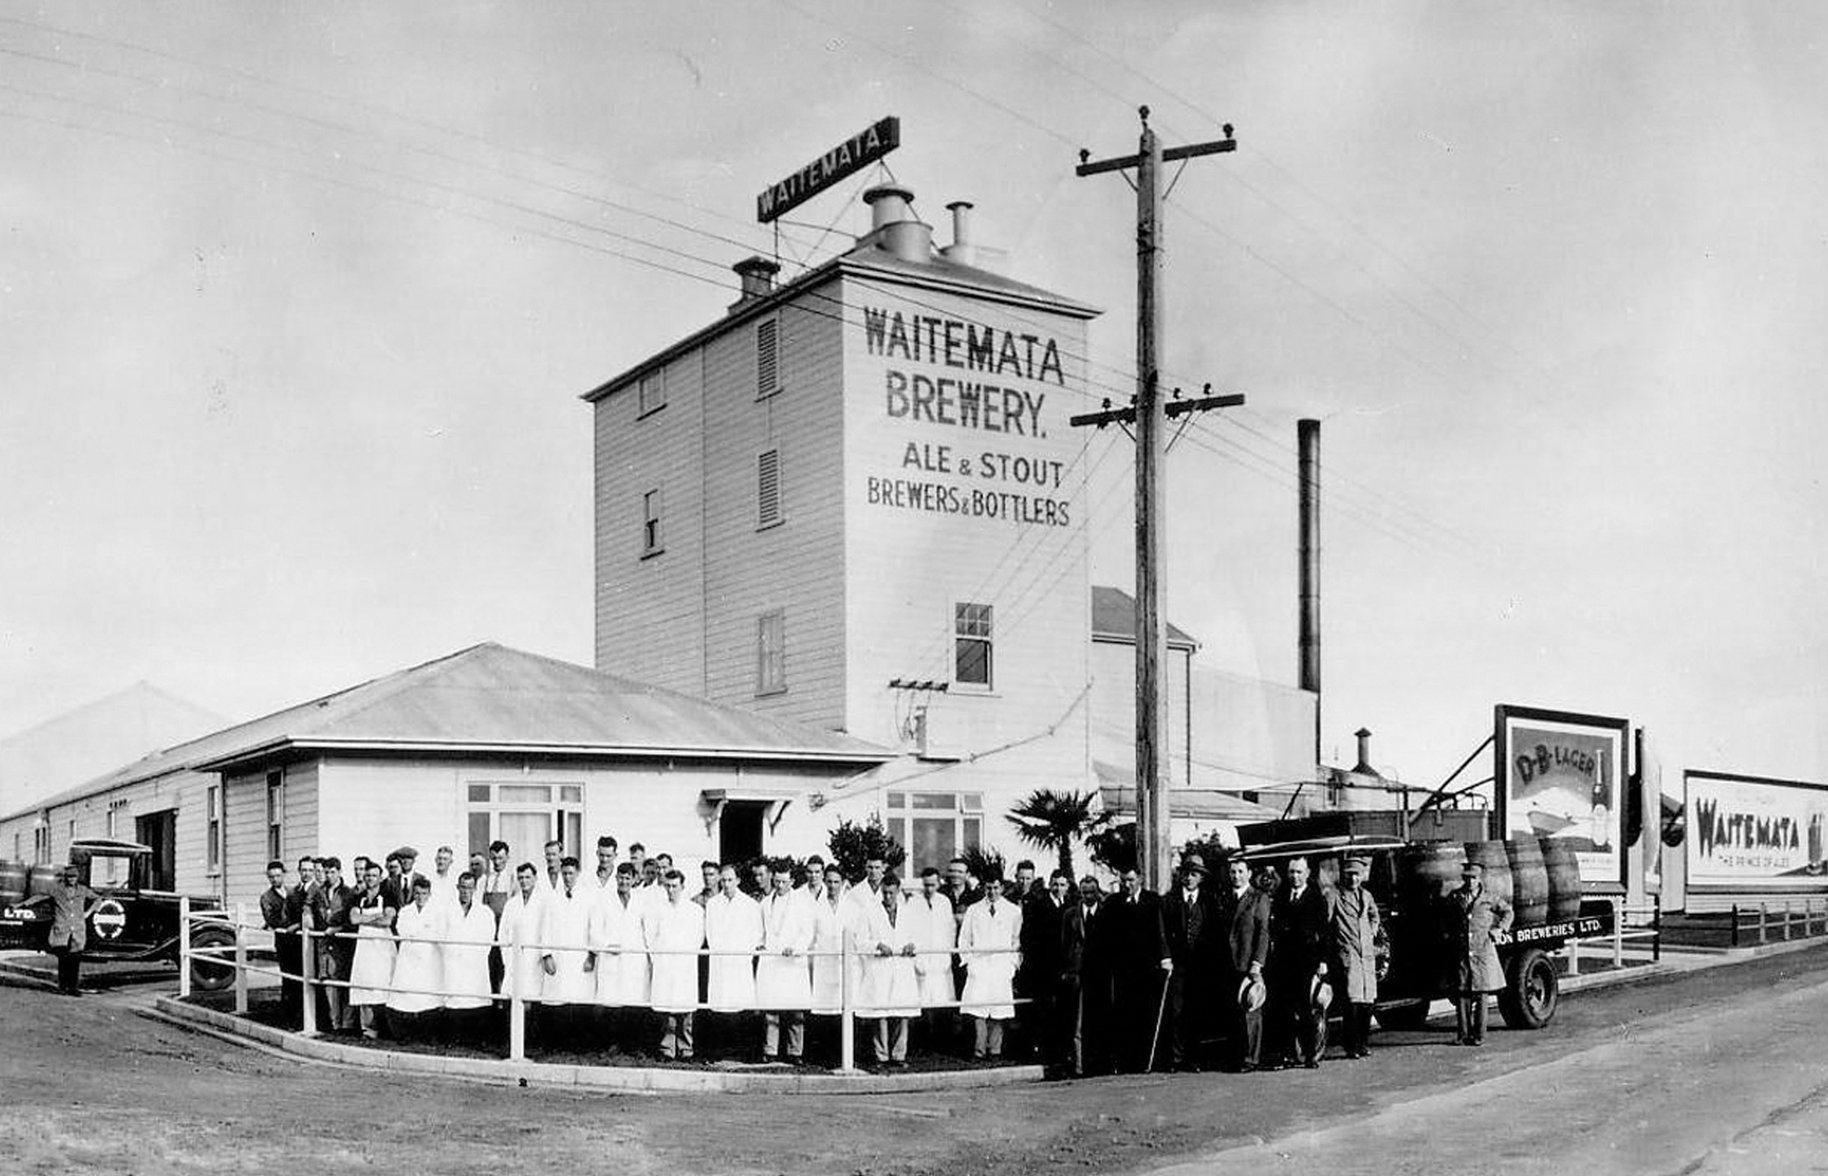 DB Export Waitemata brewery historic photograph